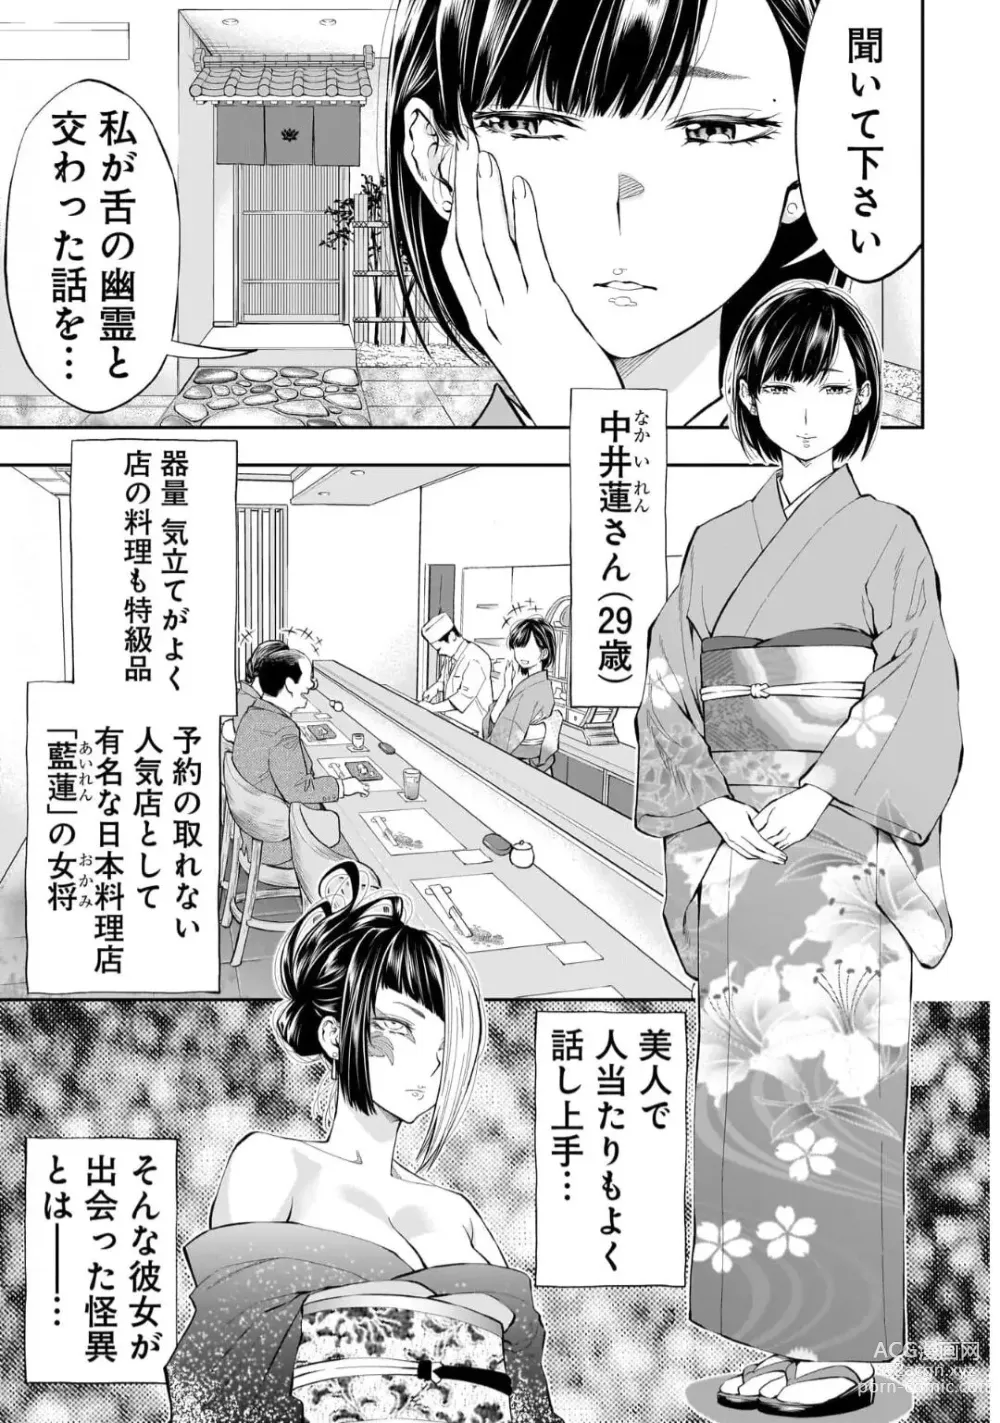 Page 2 of manga Kai Waidan Ch.2